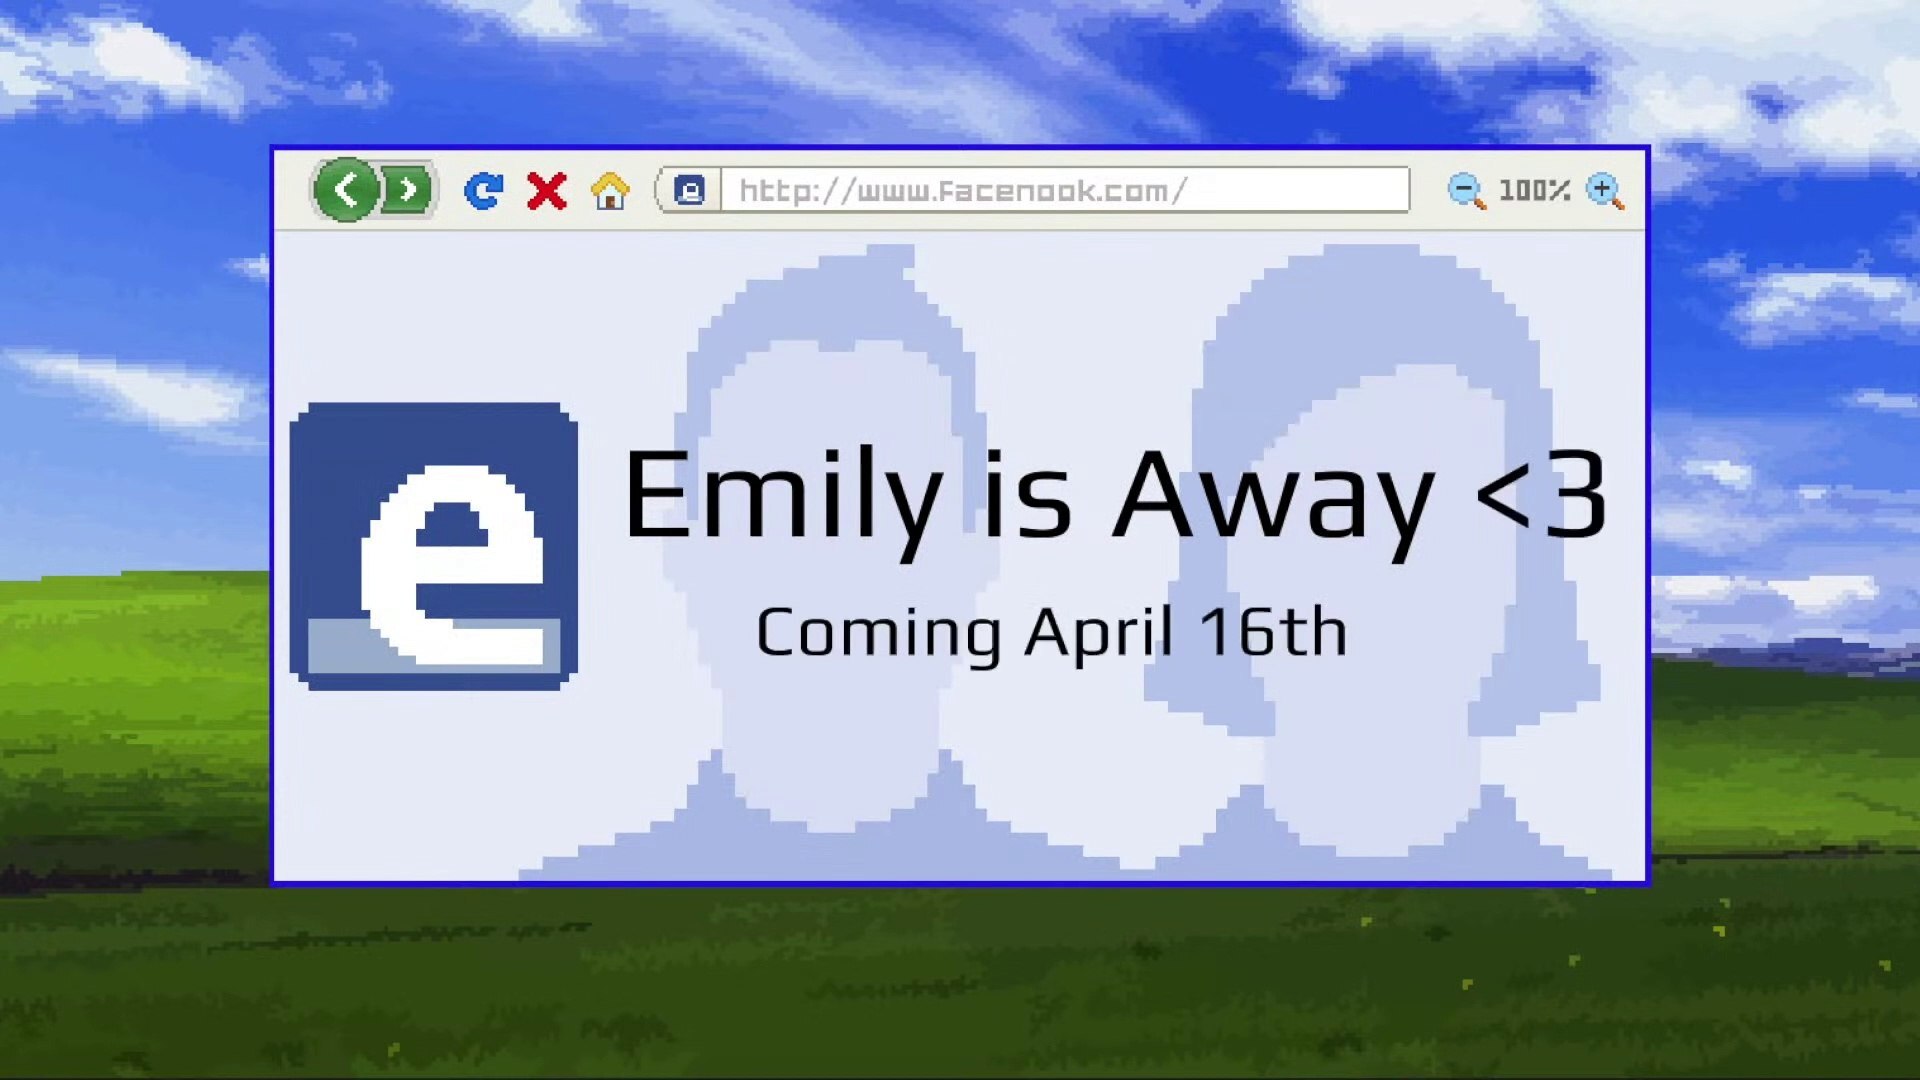 jaquette du jeu vidéo Emily is Away <3